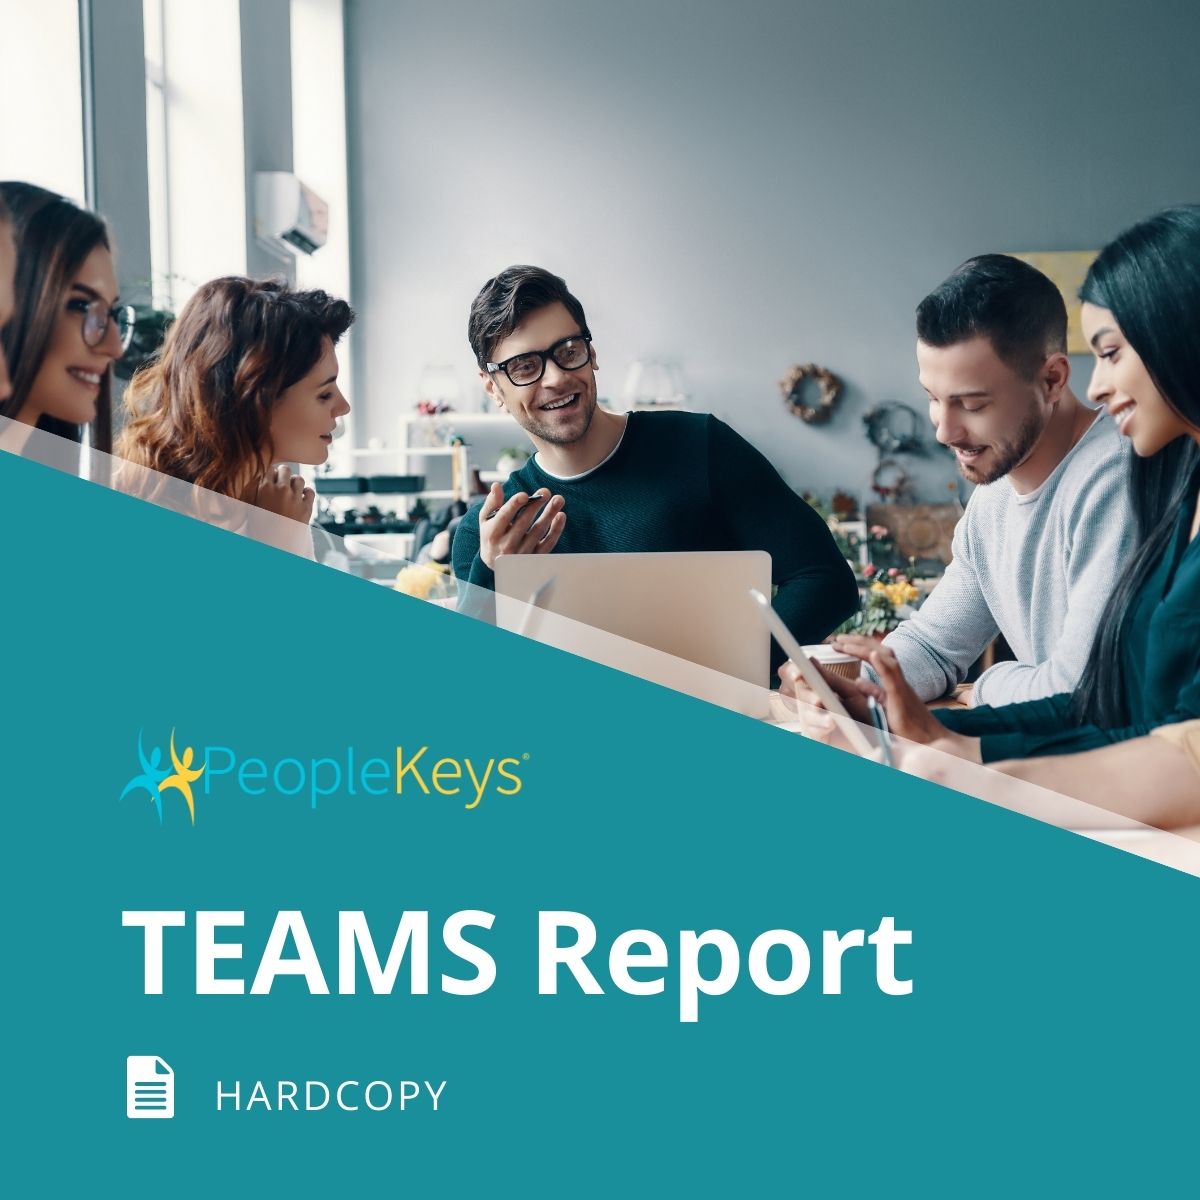 TEAMS Report (Hardcopy)